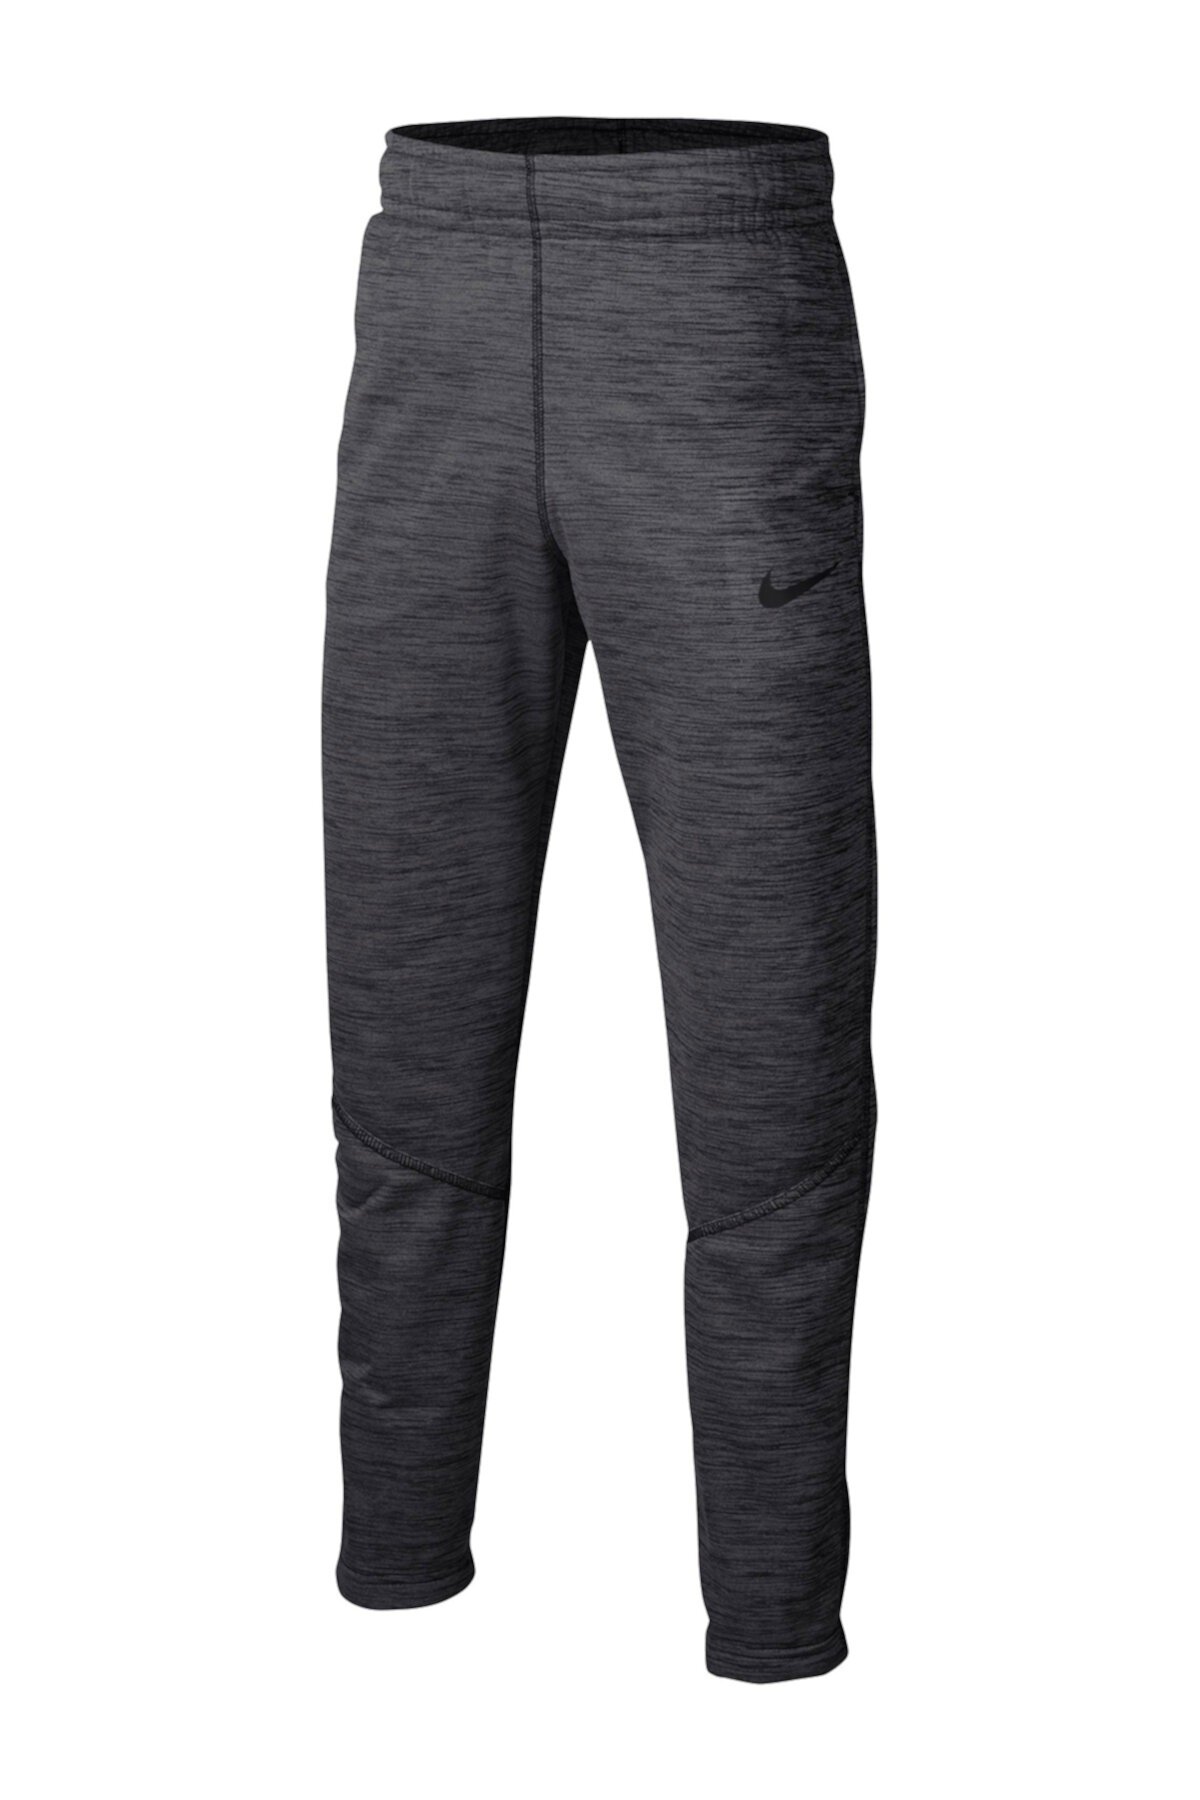 Тренировочные брюки Therma (для больших мальчиков) Nike